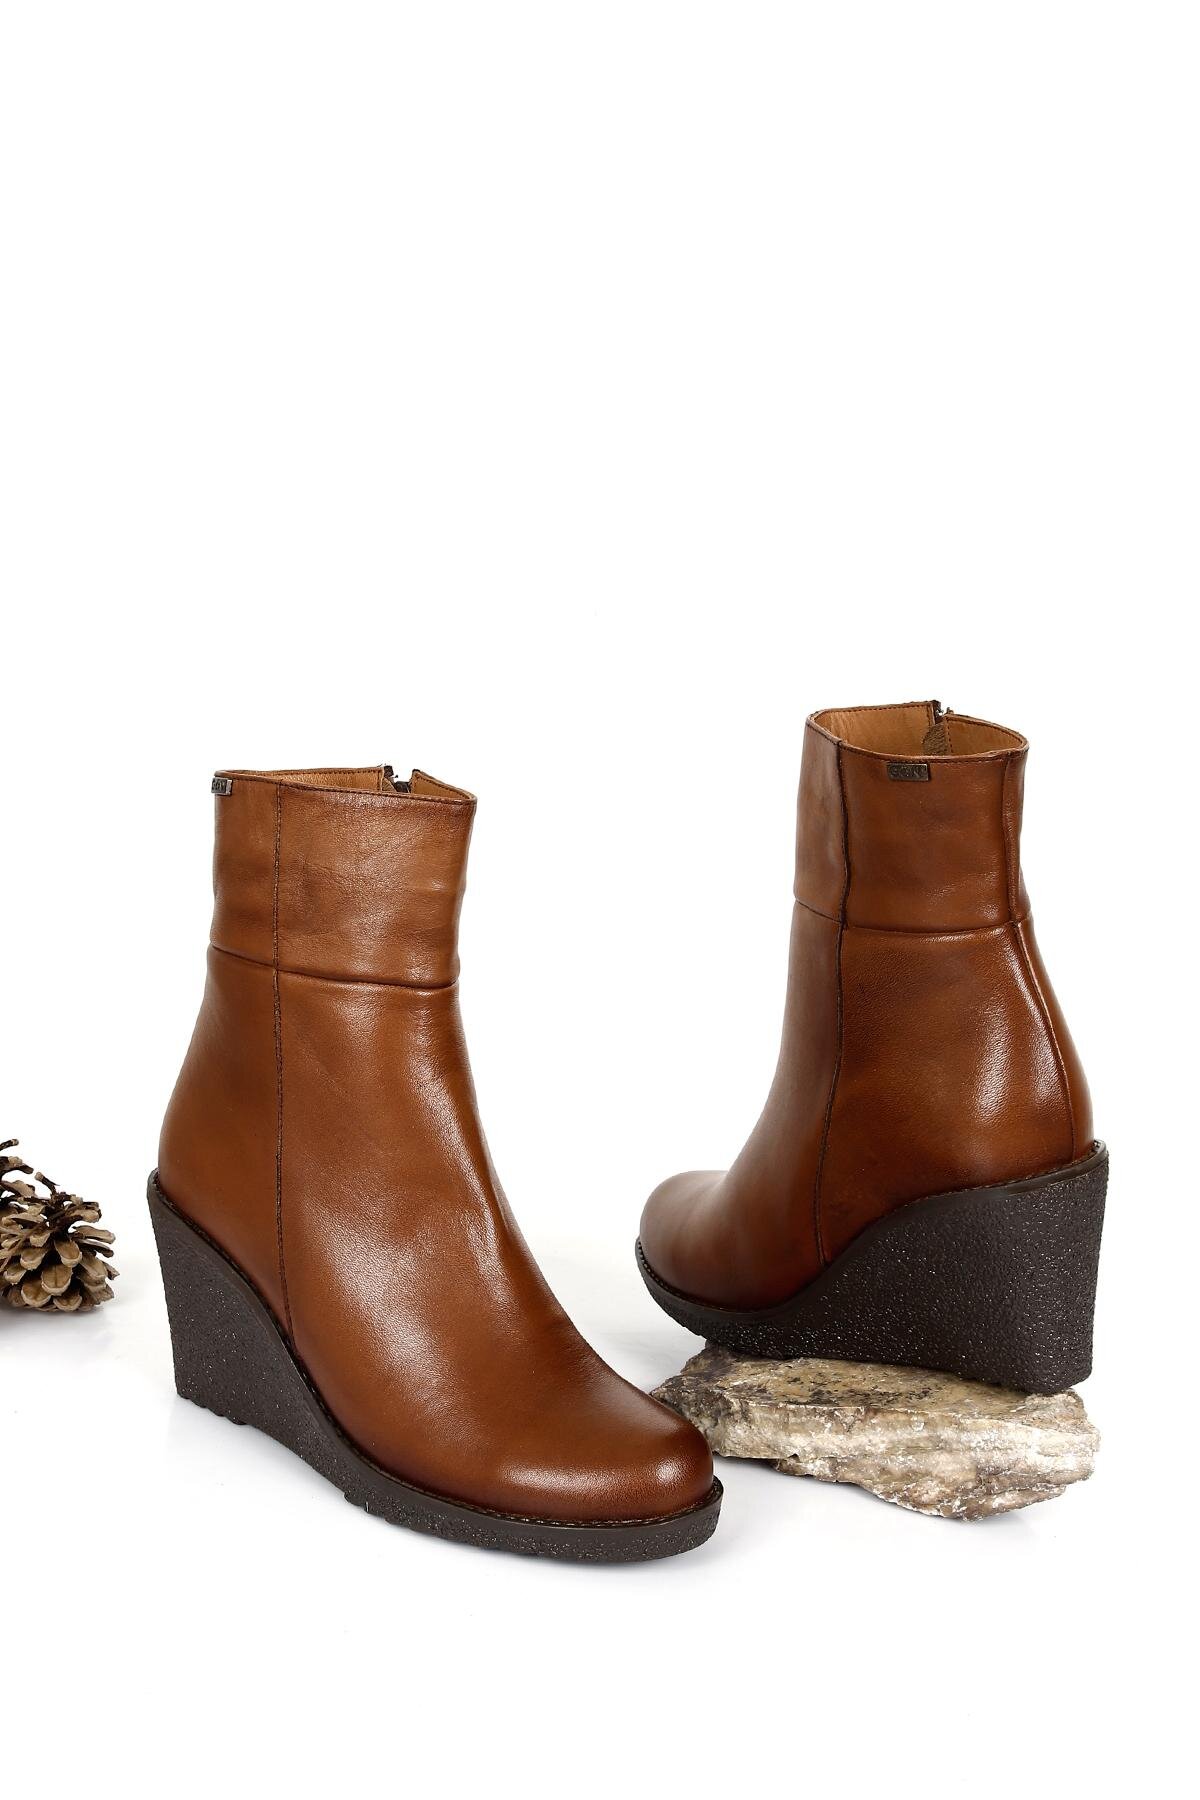 Kahverengi Süet Taşlı 6 Cm Topuklu Kadın Bot Ayakkabı 403 -  21KBOOTWOGGO038-20637 - LC Waikiki